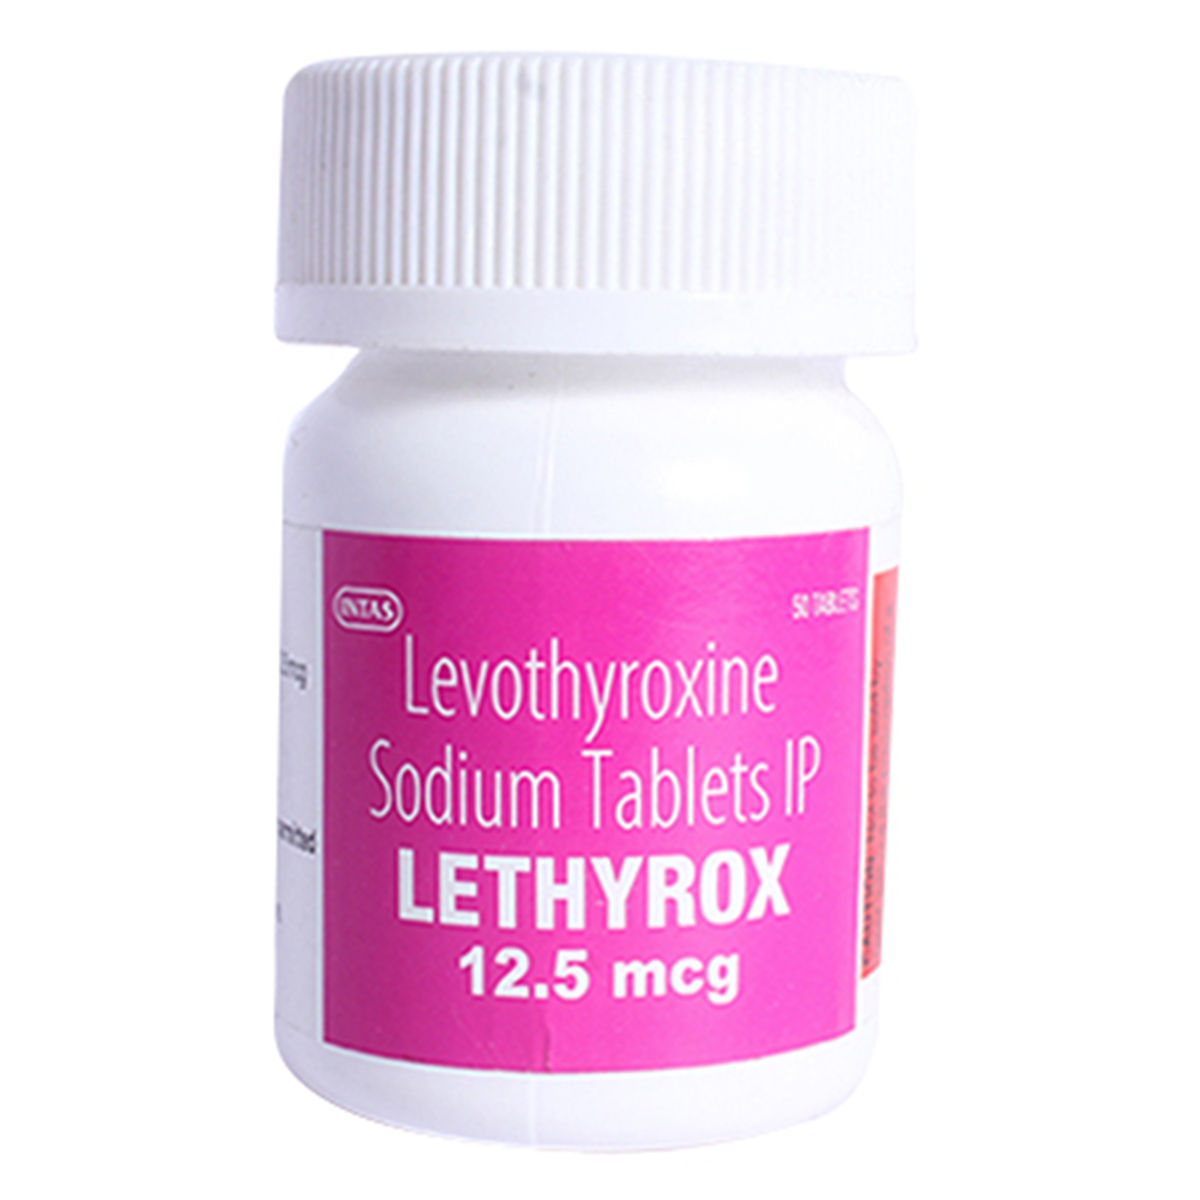 Buy Lethyrox 12.5 mcg Tablet 50's Online